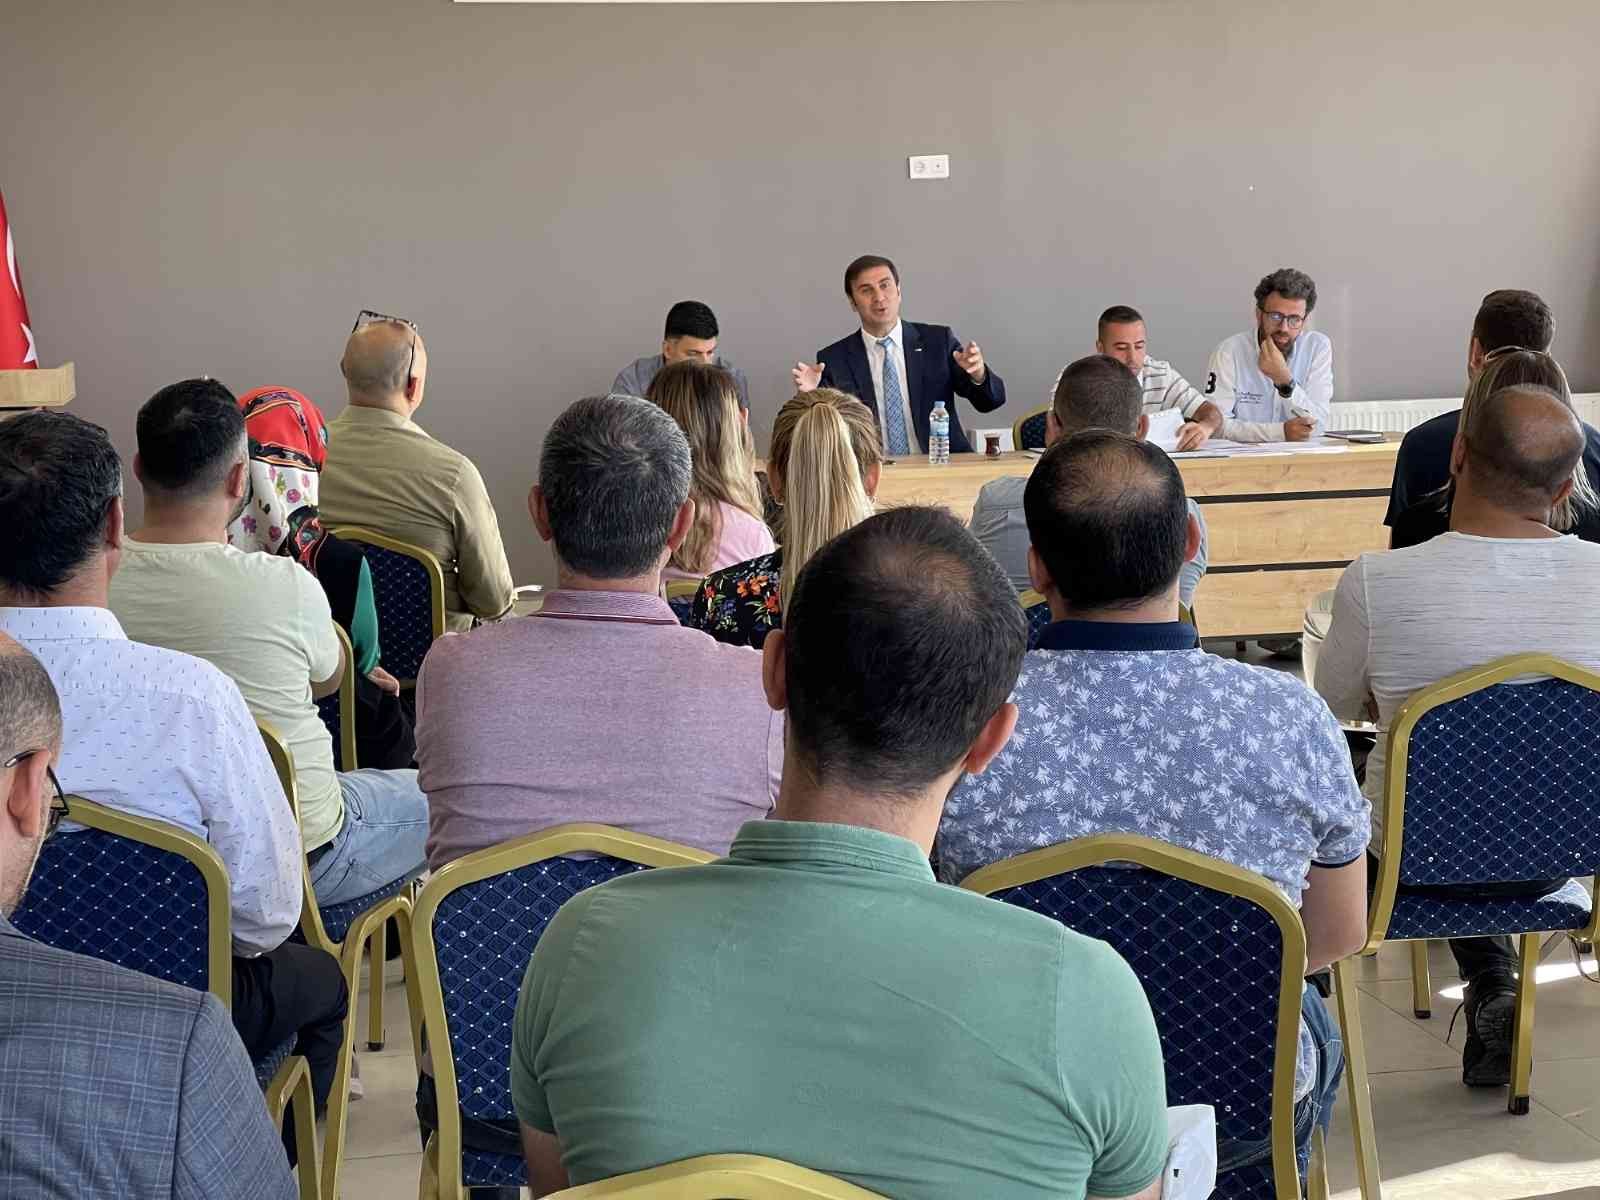 Gaziantep Büyükşehir Belediyesi 2 yeni birim ile engellilere hizmet veriyor